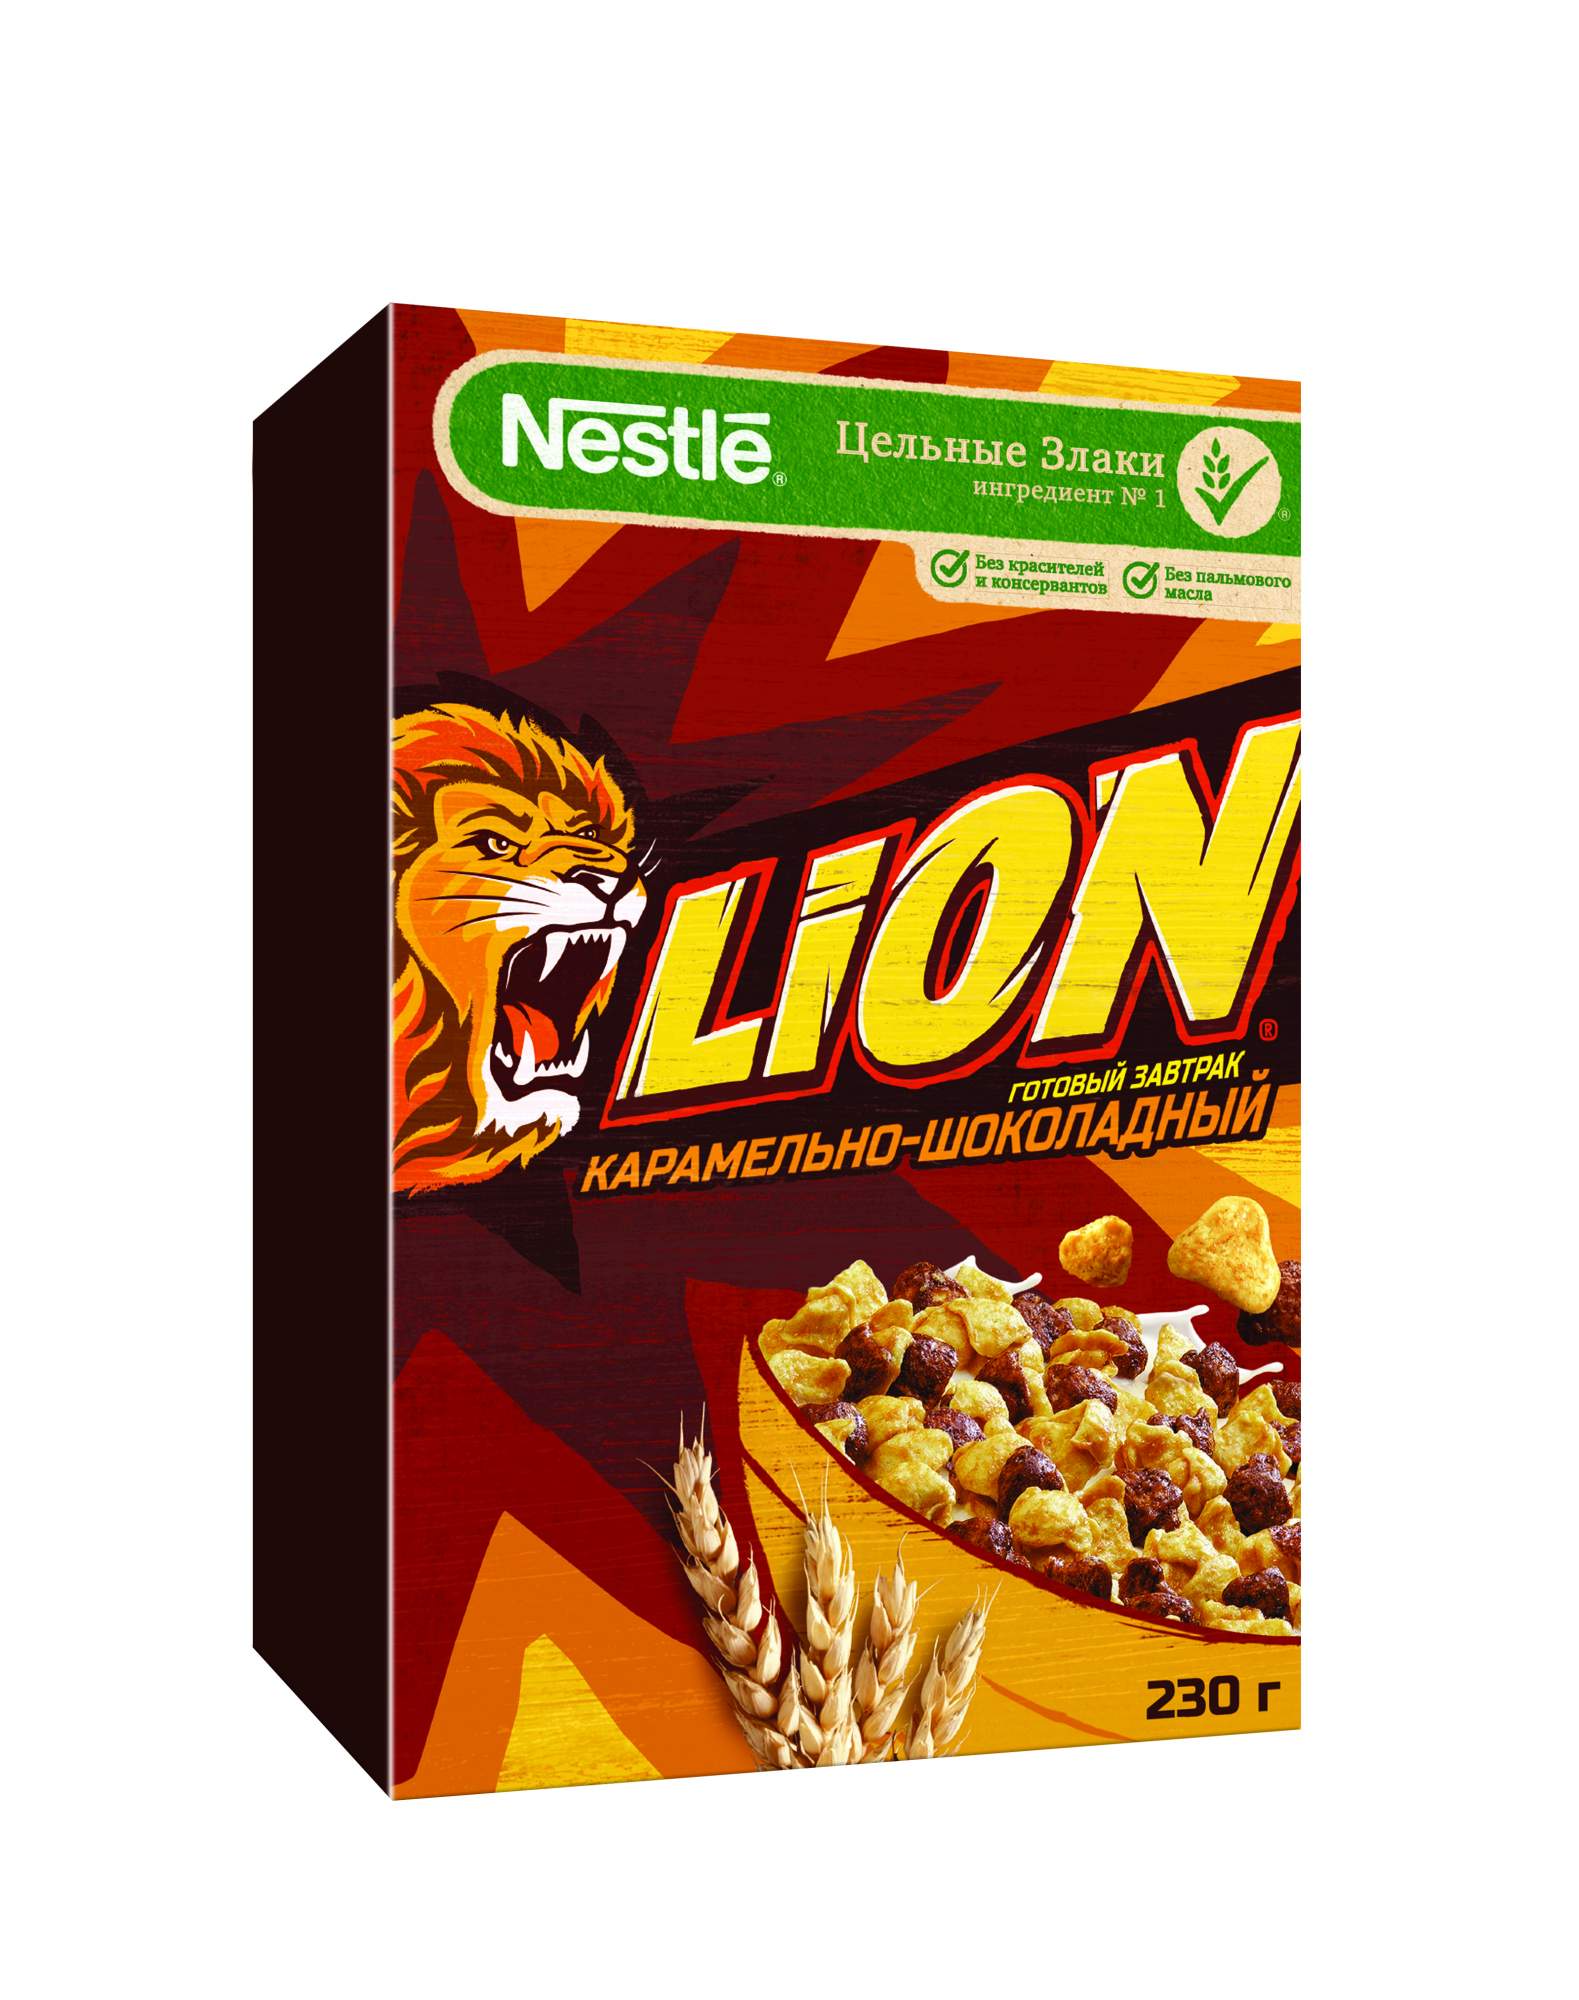 Готовый завтрак Lion карамельно-шоколадный обогащенный витаминами 230 г